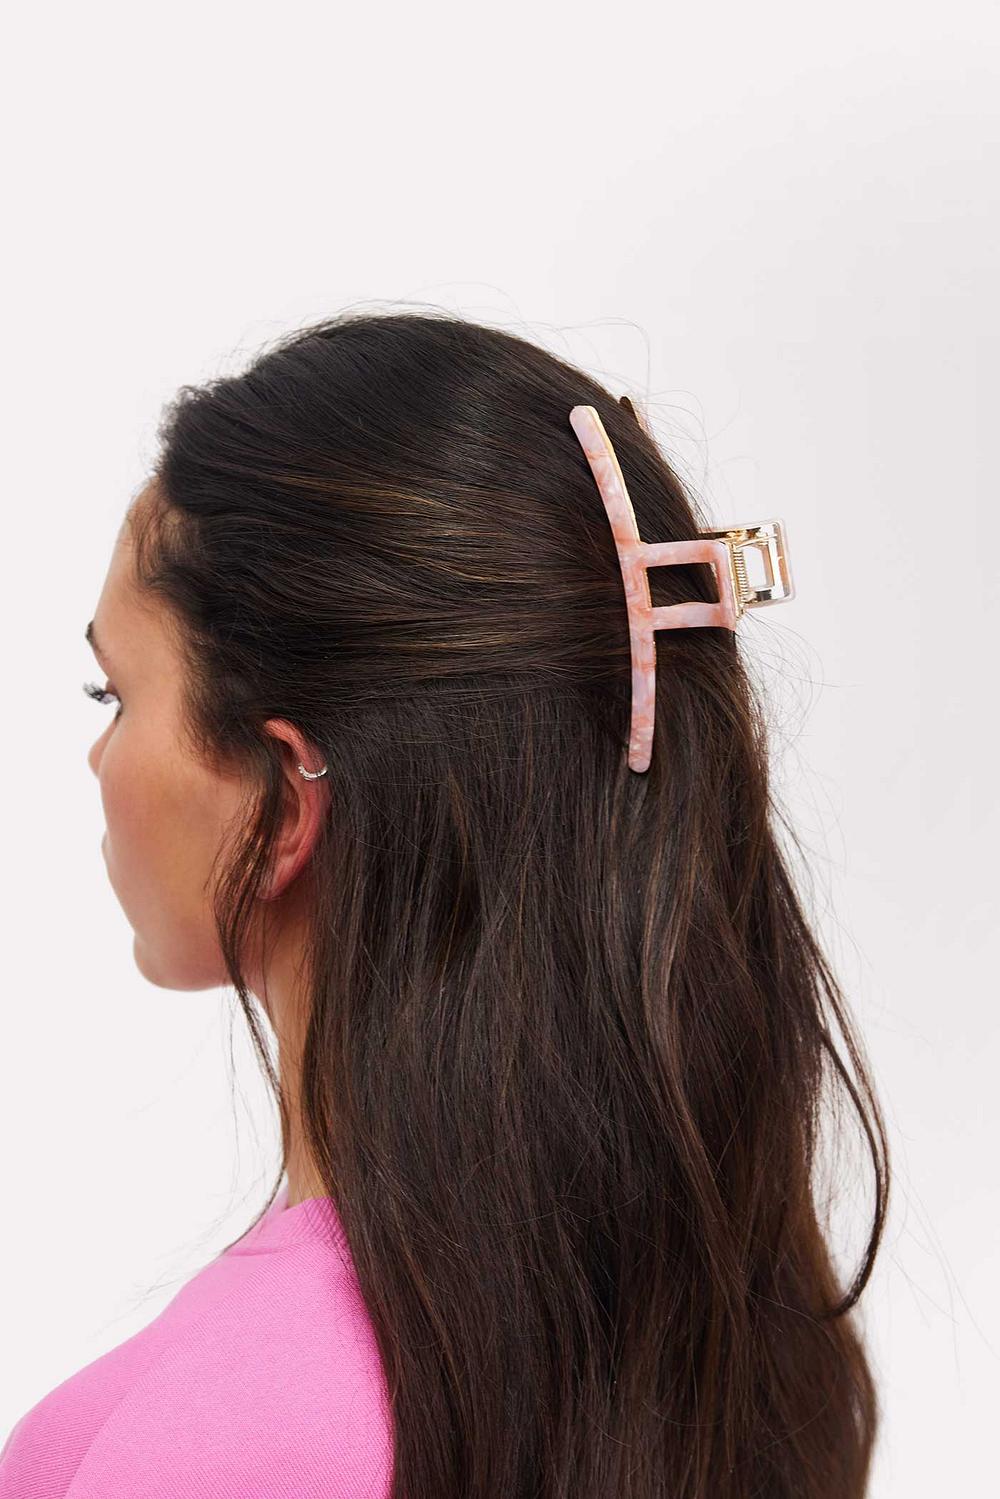 Pink hair clip